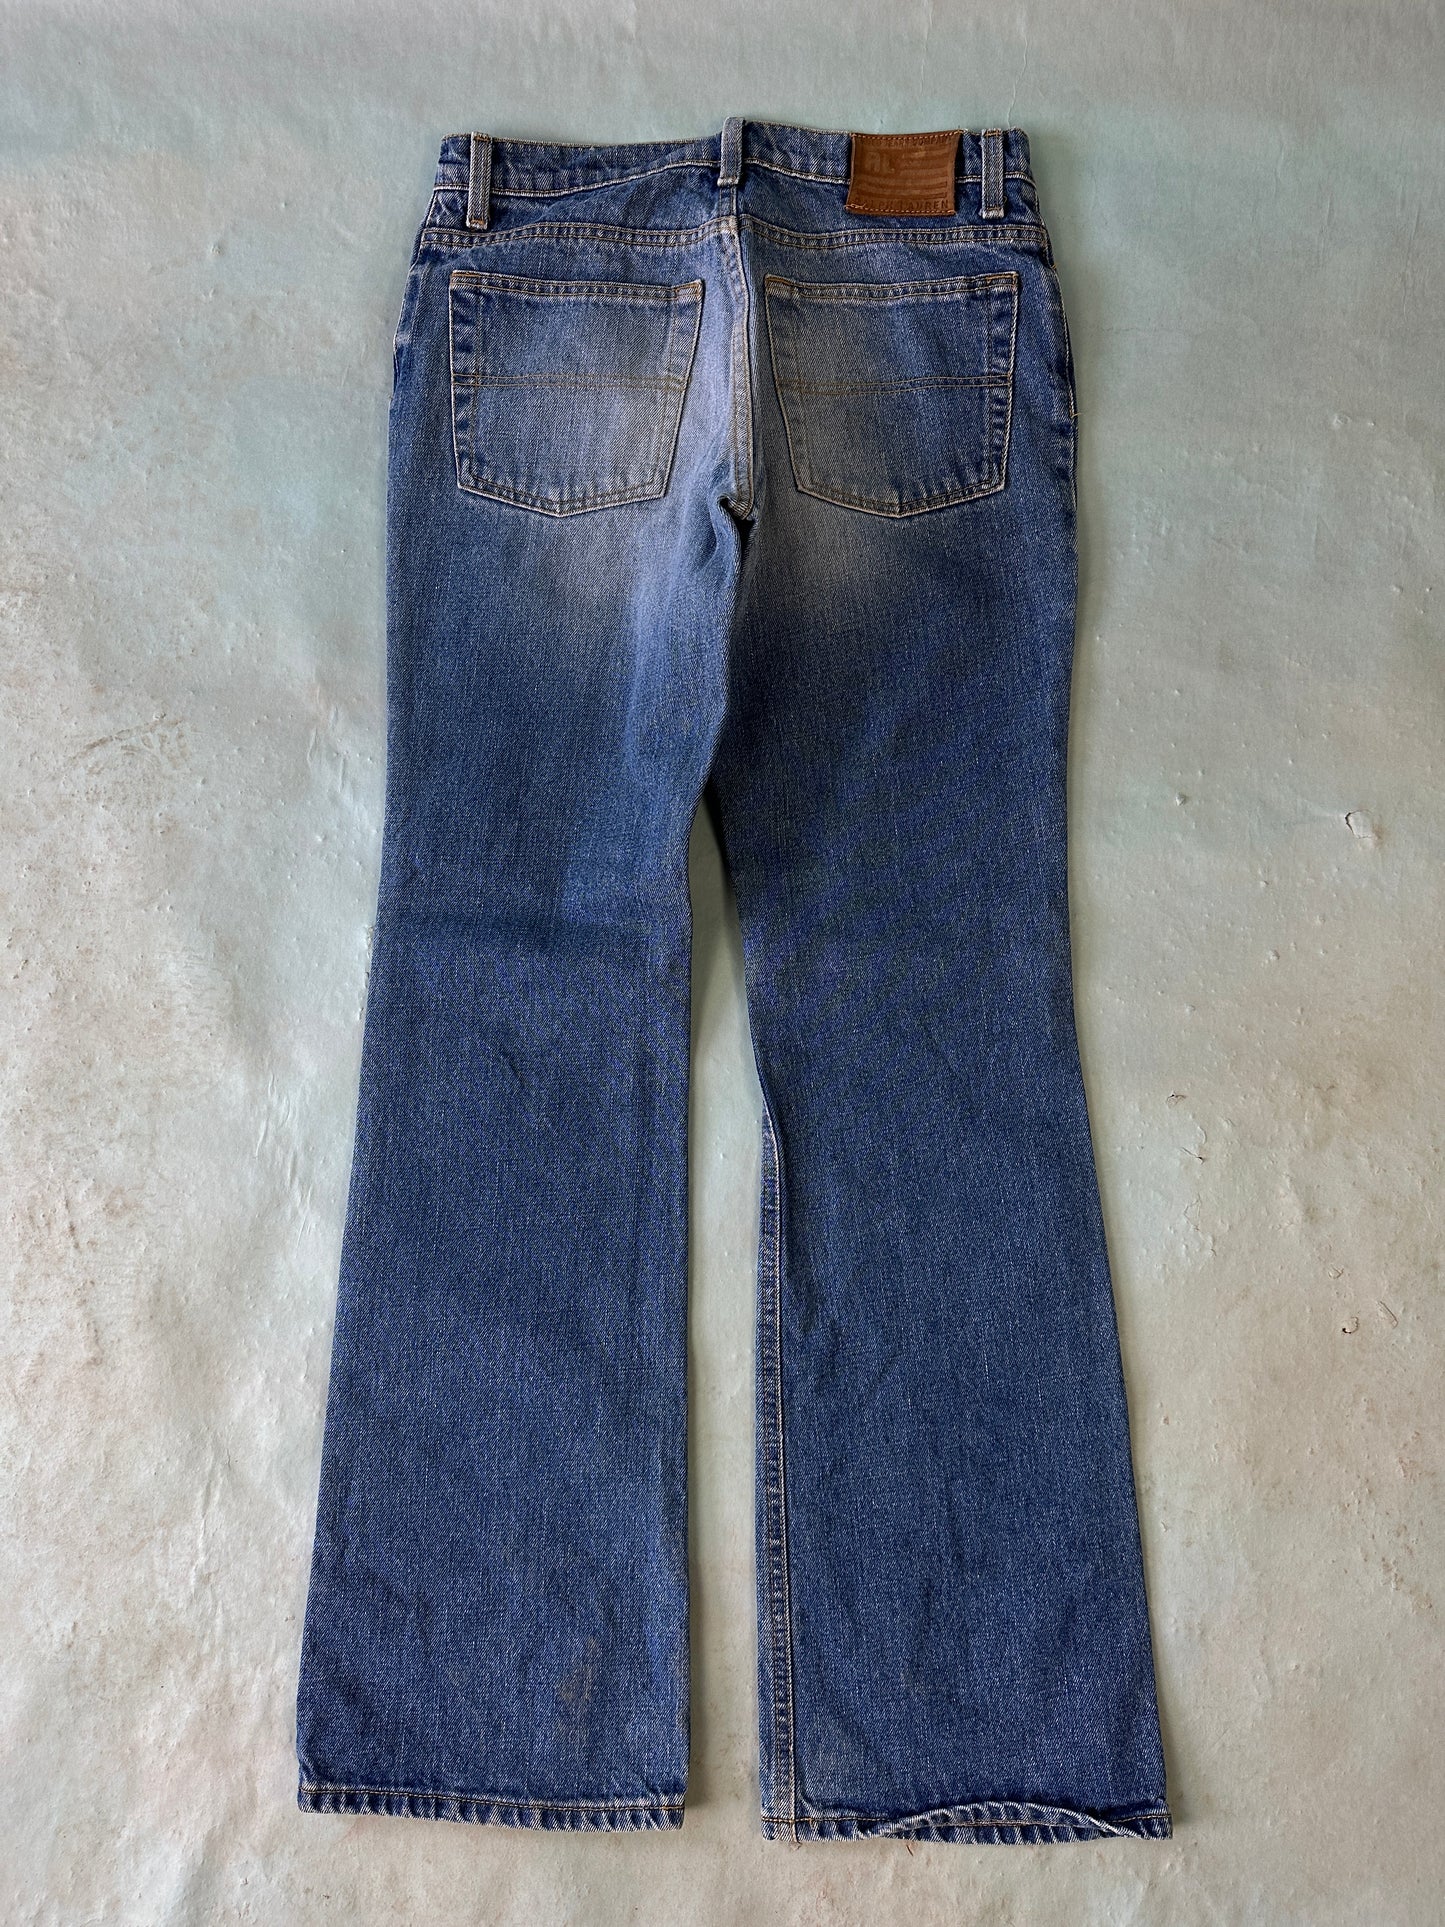 Ralph Lauren Polo Jeans Vintage Denim - 30